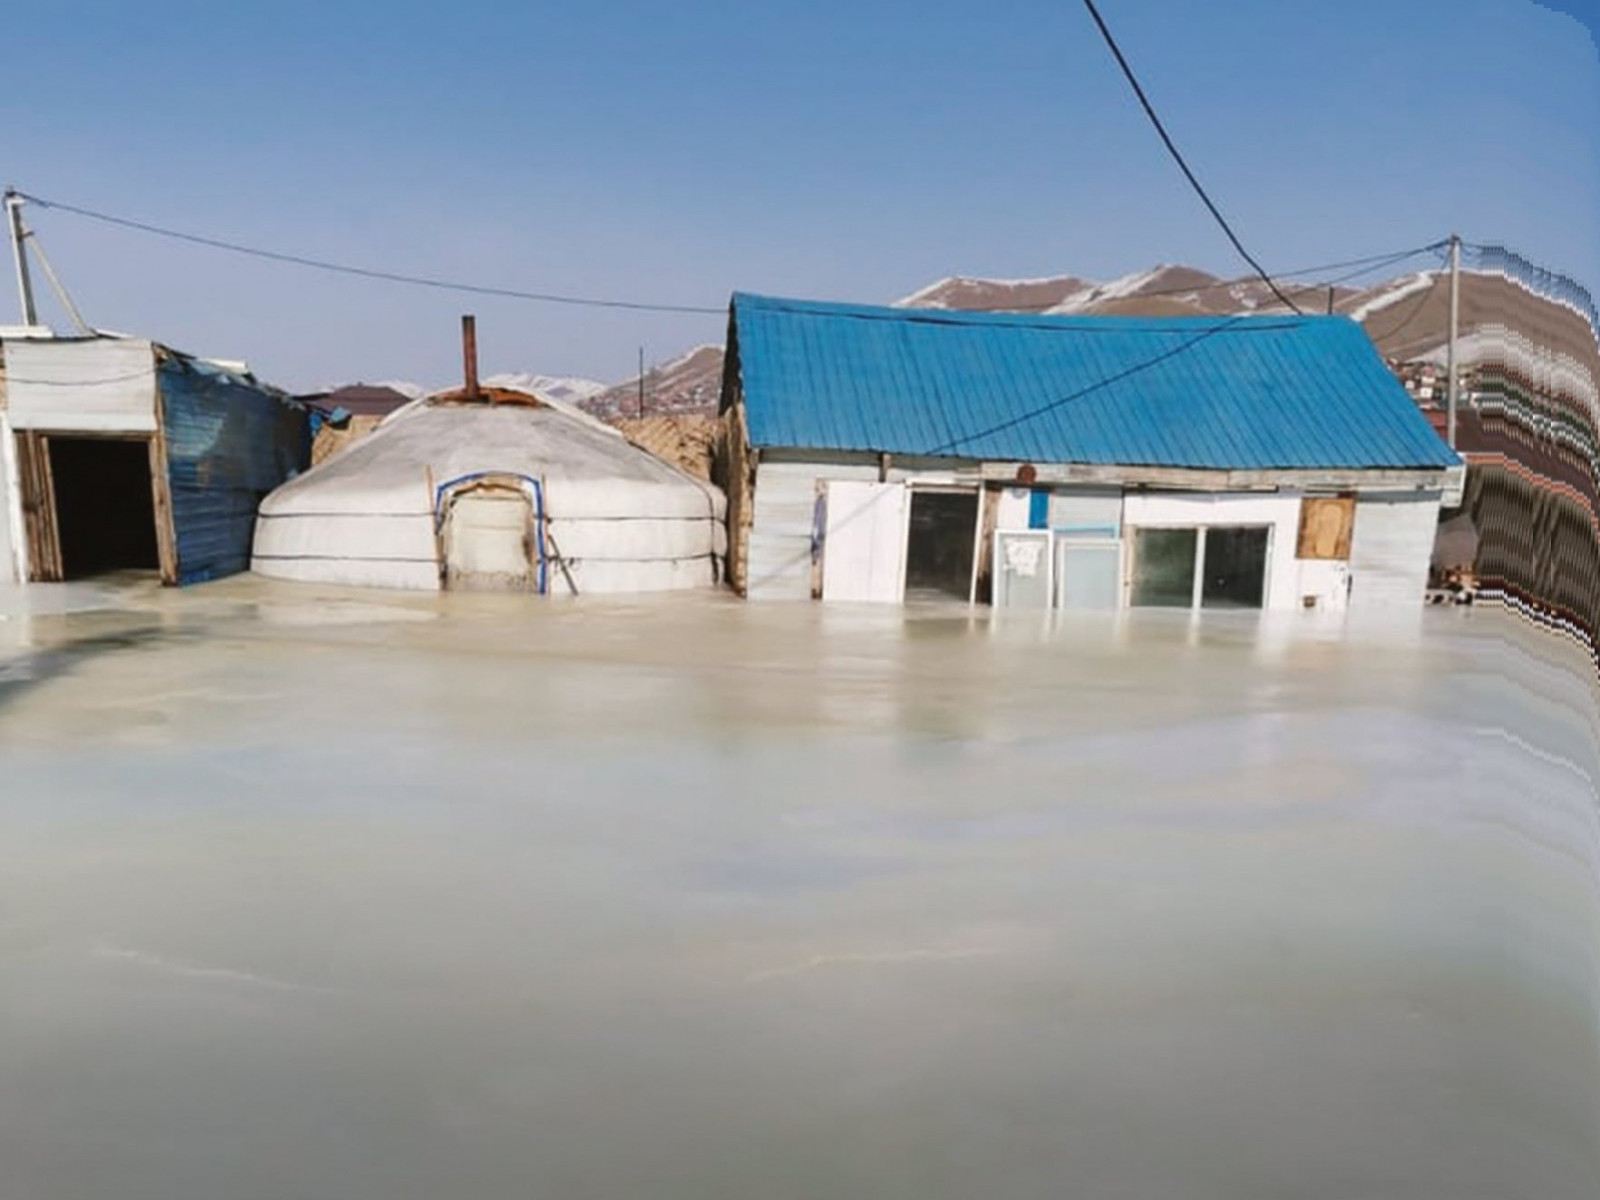 Баянзүрх дүүргийн зарим хорооны айлууд усны халианд автаж, гэр байшингууд мөстжээ